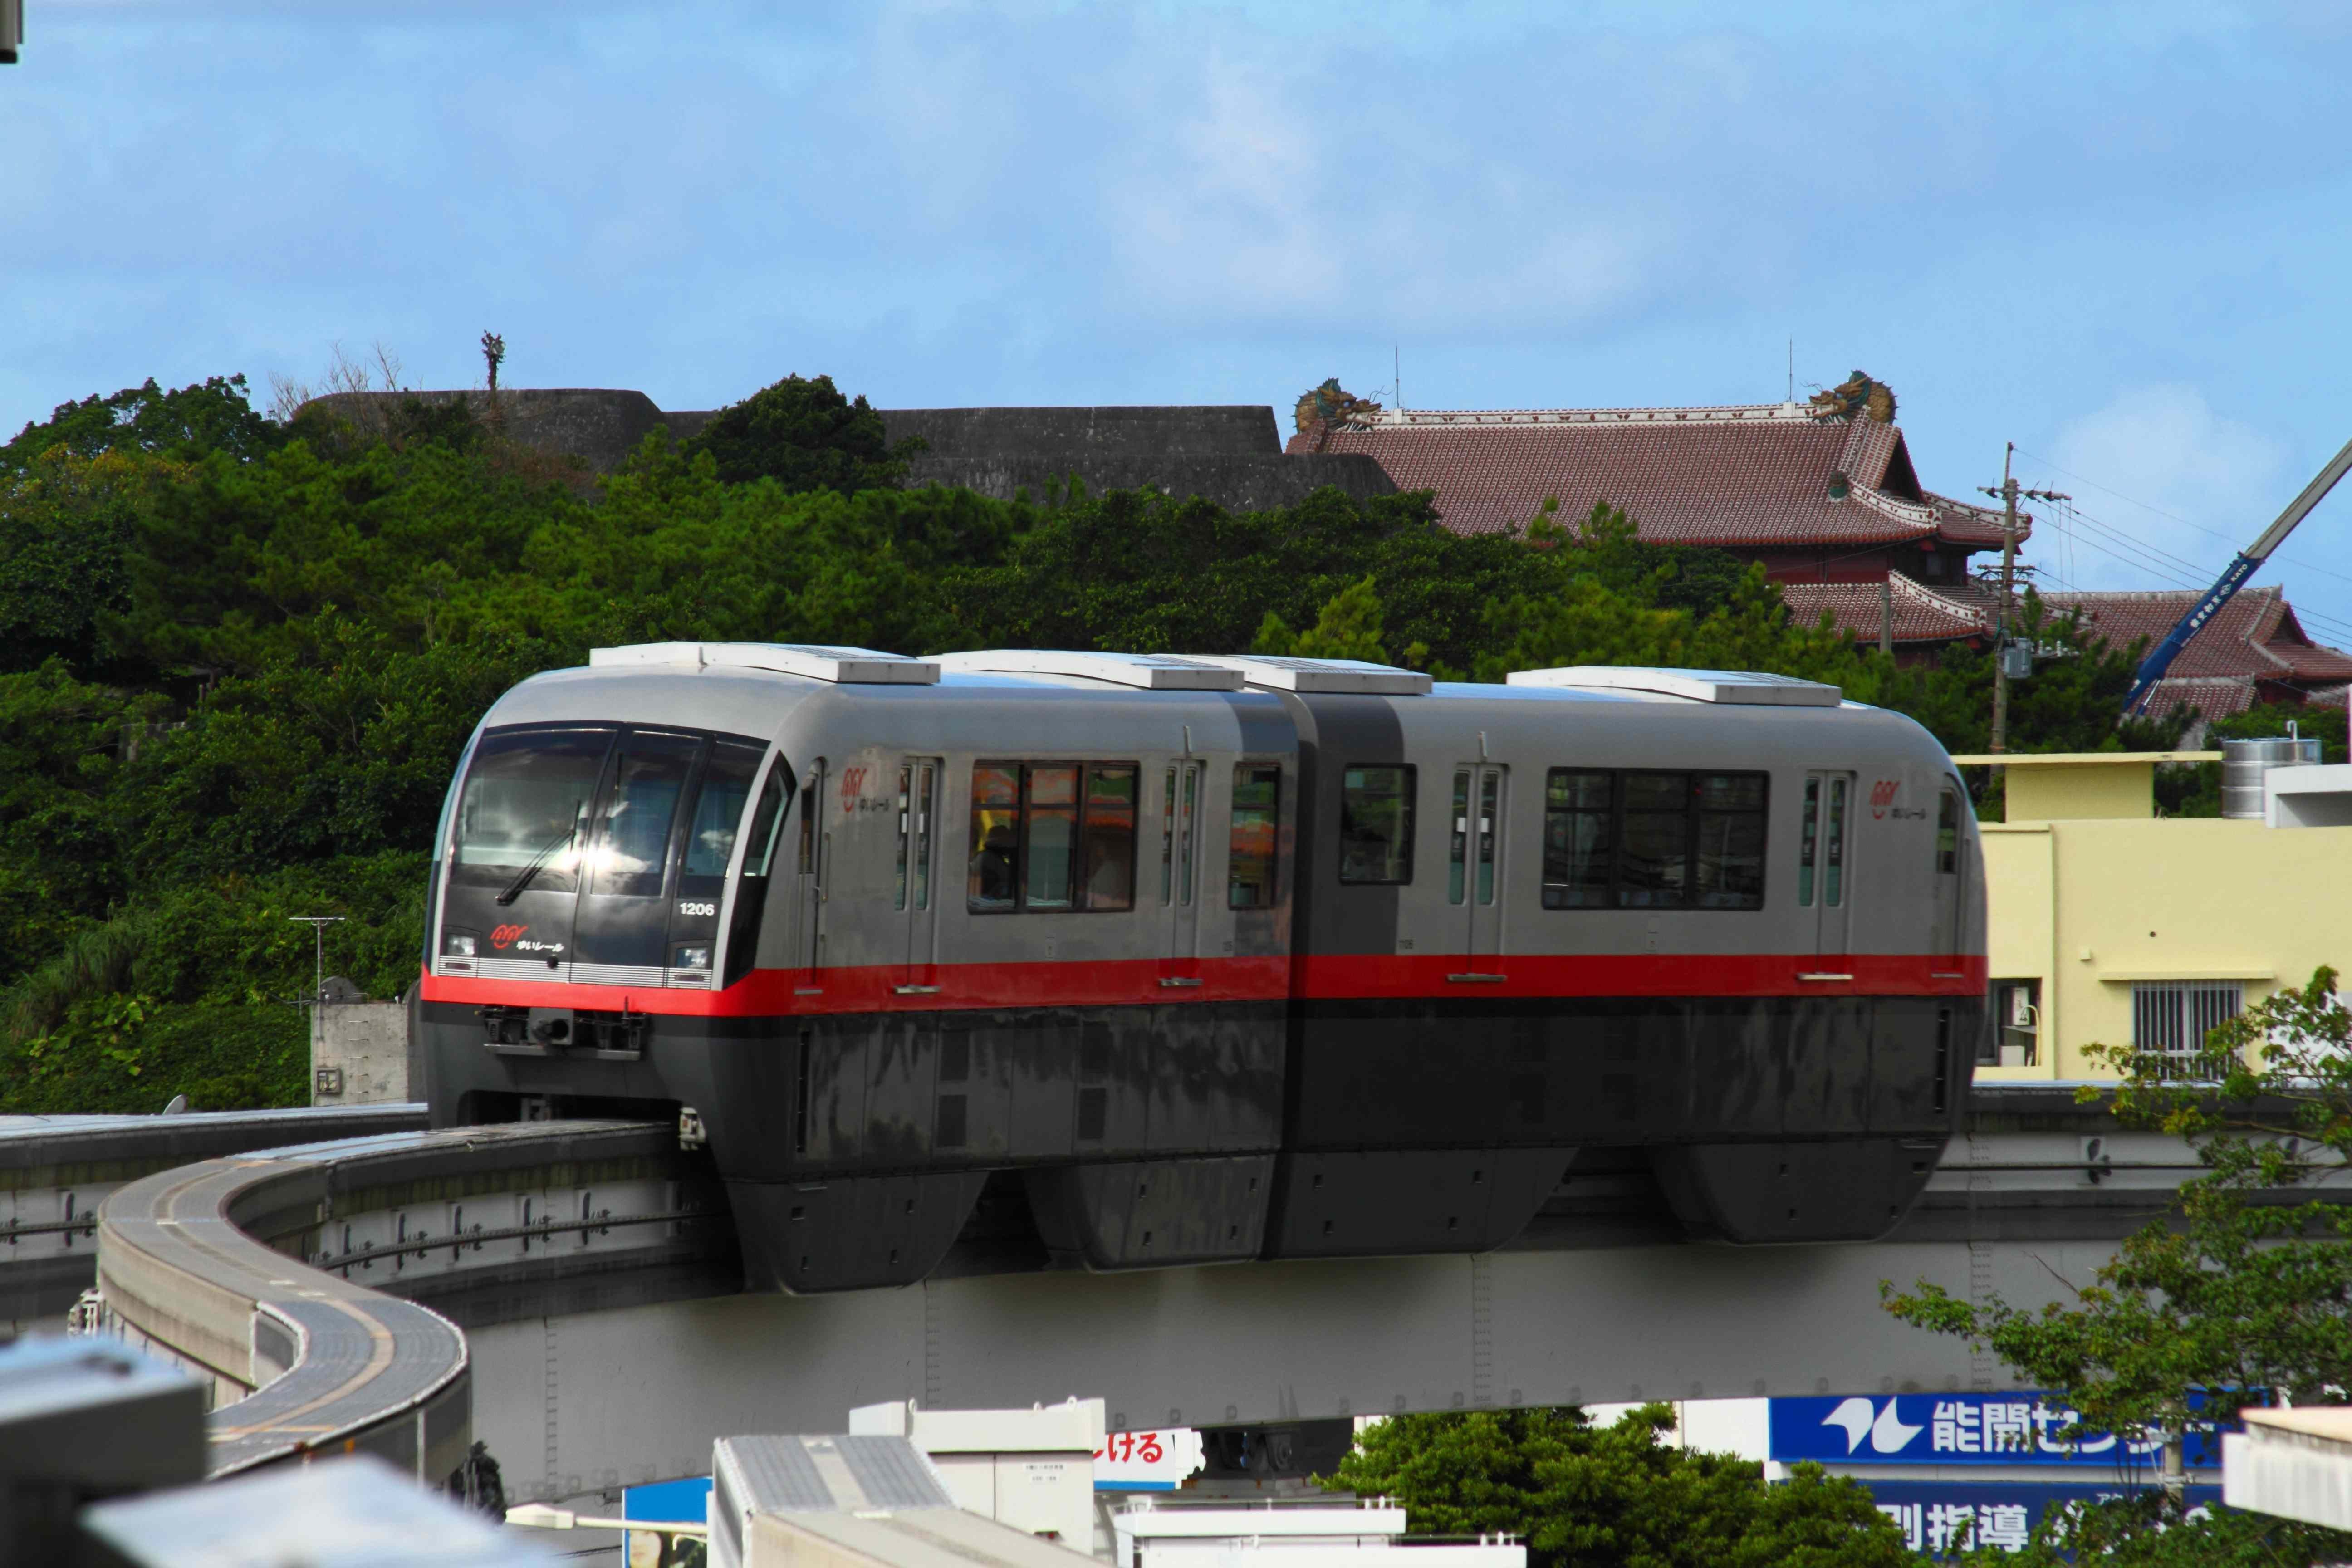 รถไฟรางเดี่ยวโมโนเรลของโอกินาว่า Yui Rail - คู่มือพร้อมทุกสิ่งที่จำเป็นต้องรู้!